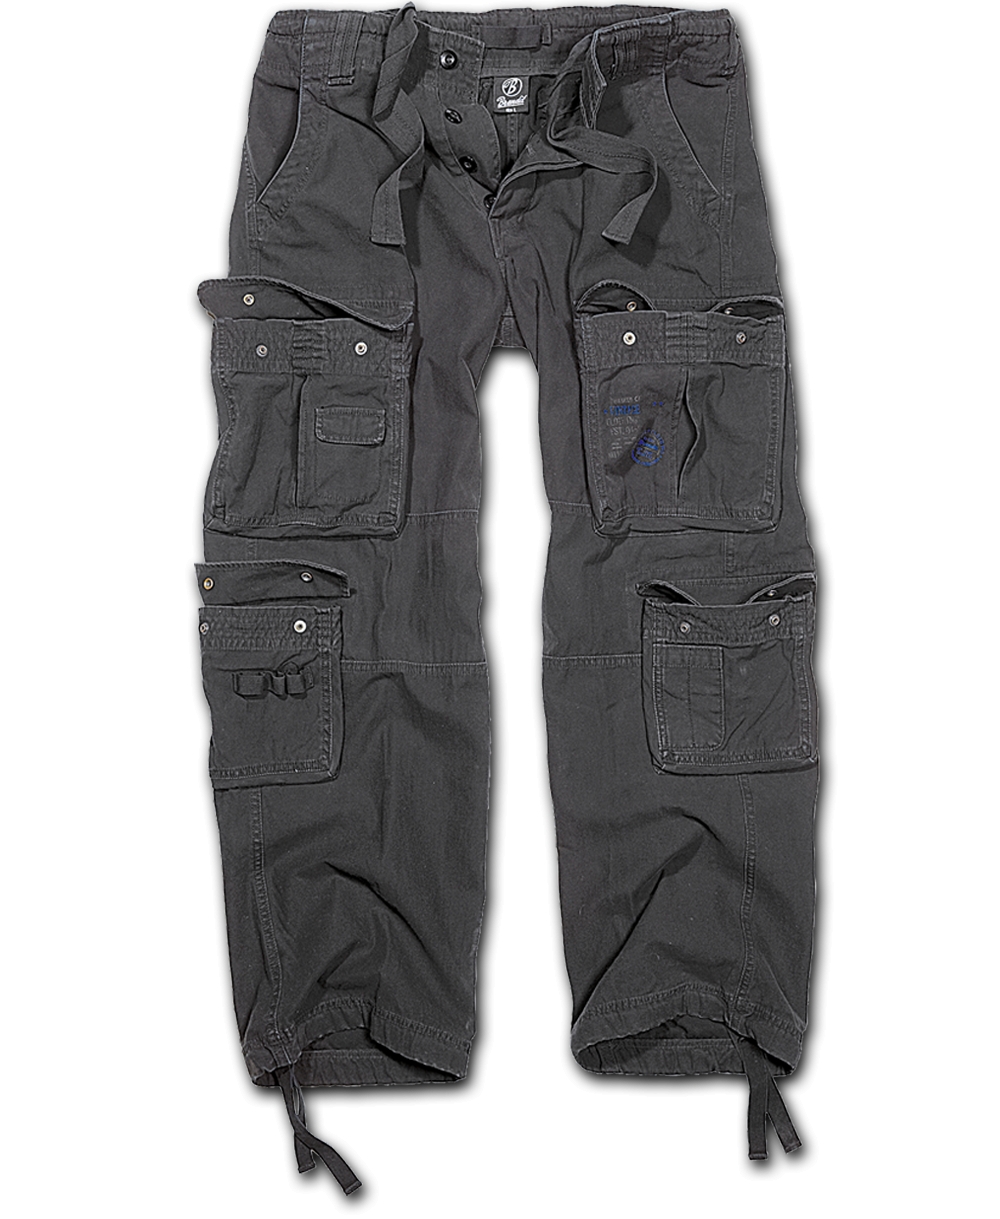 Kalhoty Brandit Pure Vintage - černé, L